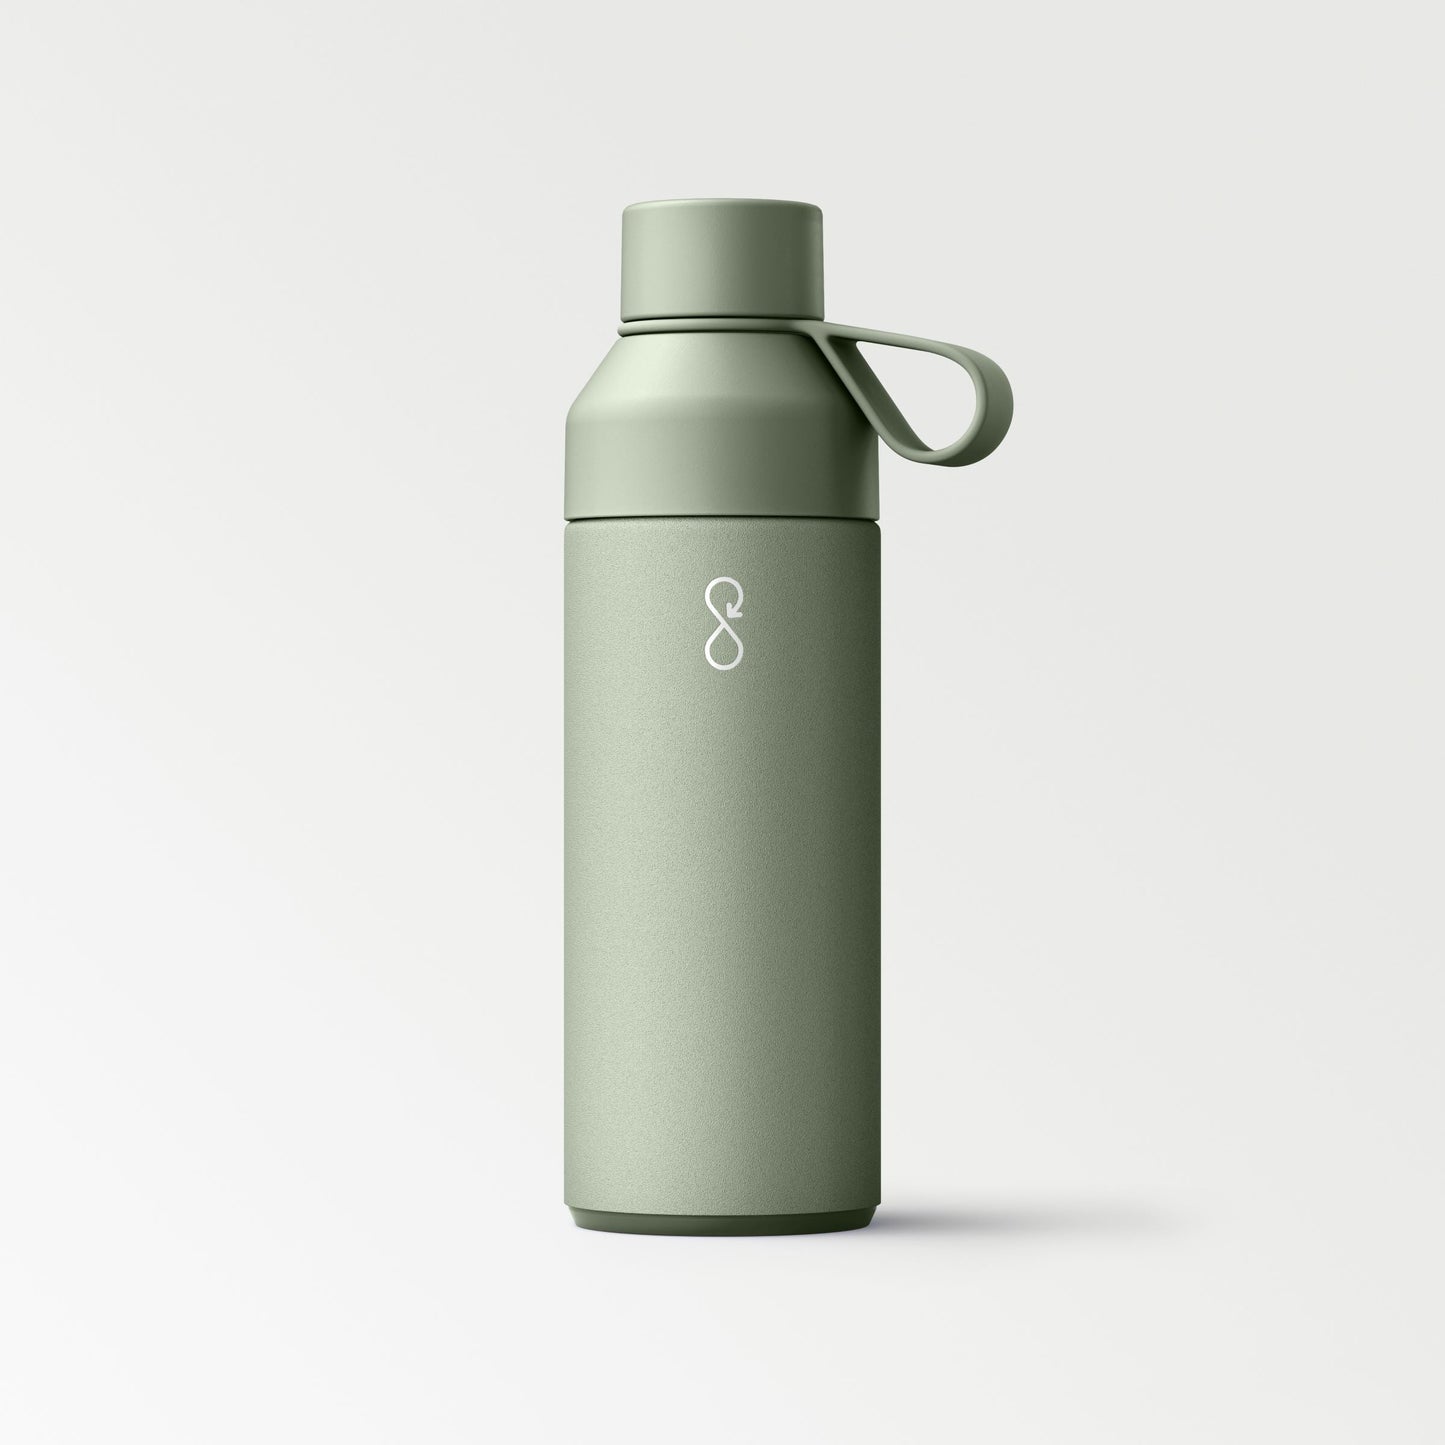 Shale Green Metal Water Bottle